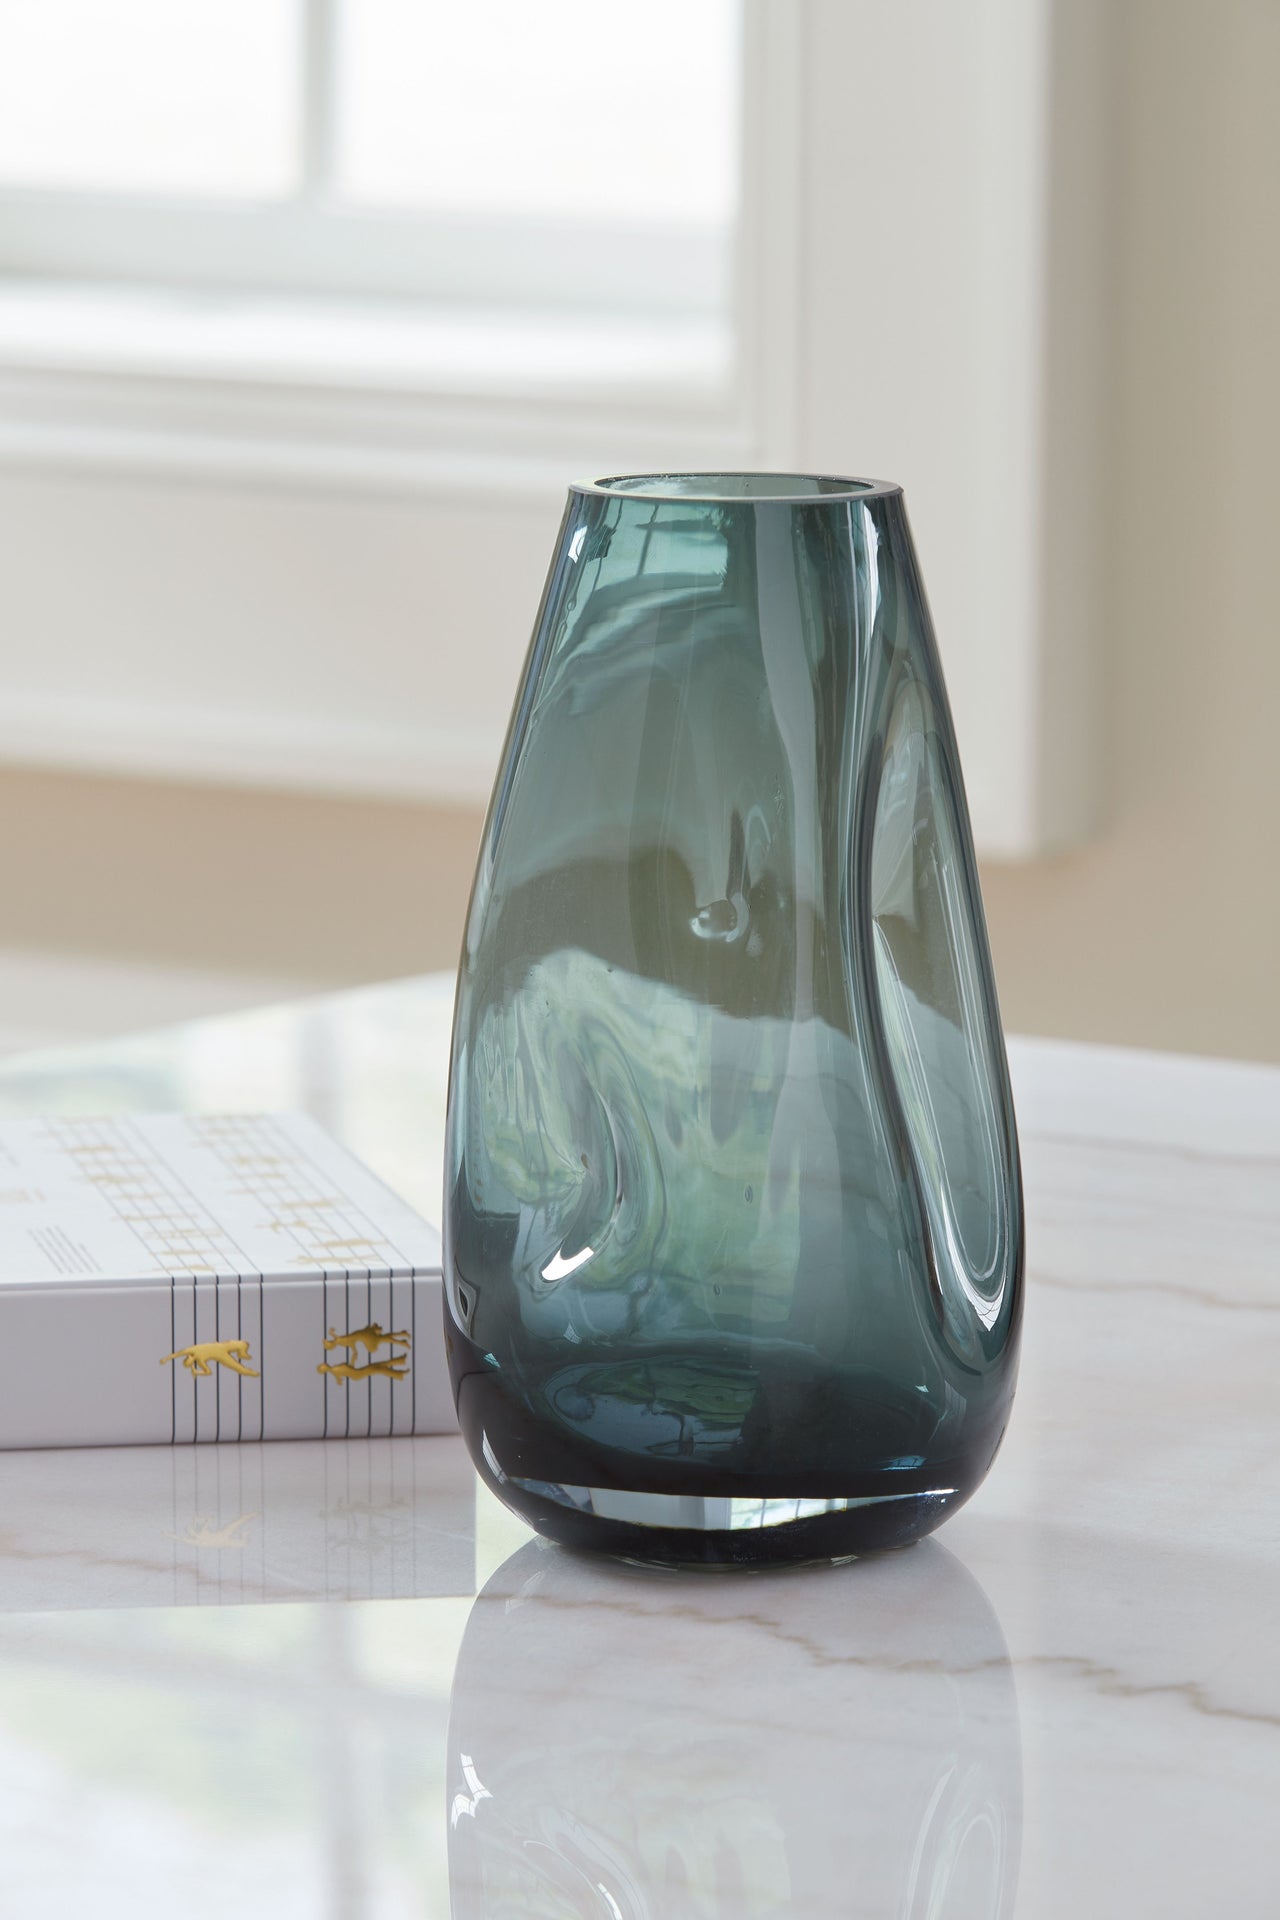 Beamund - Vase - 9" - Tony's Home Furnishings